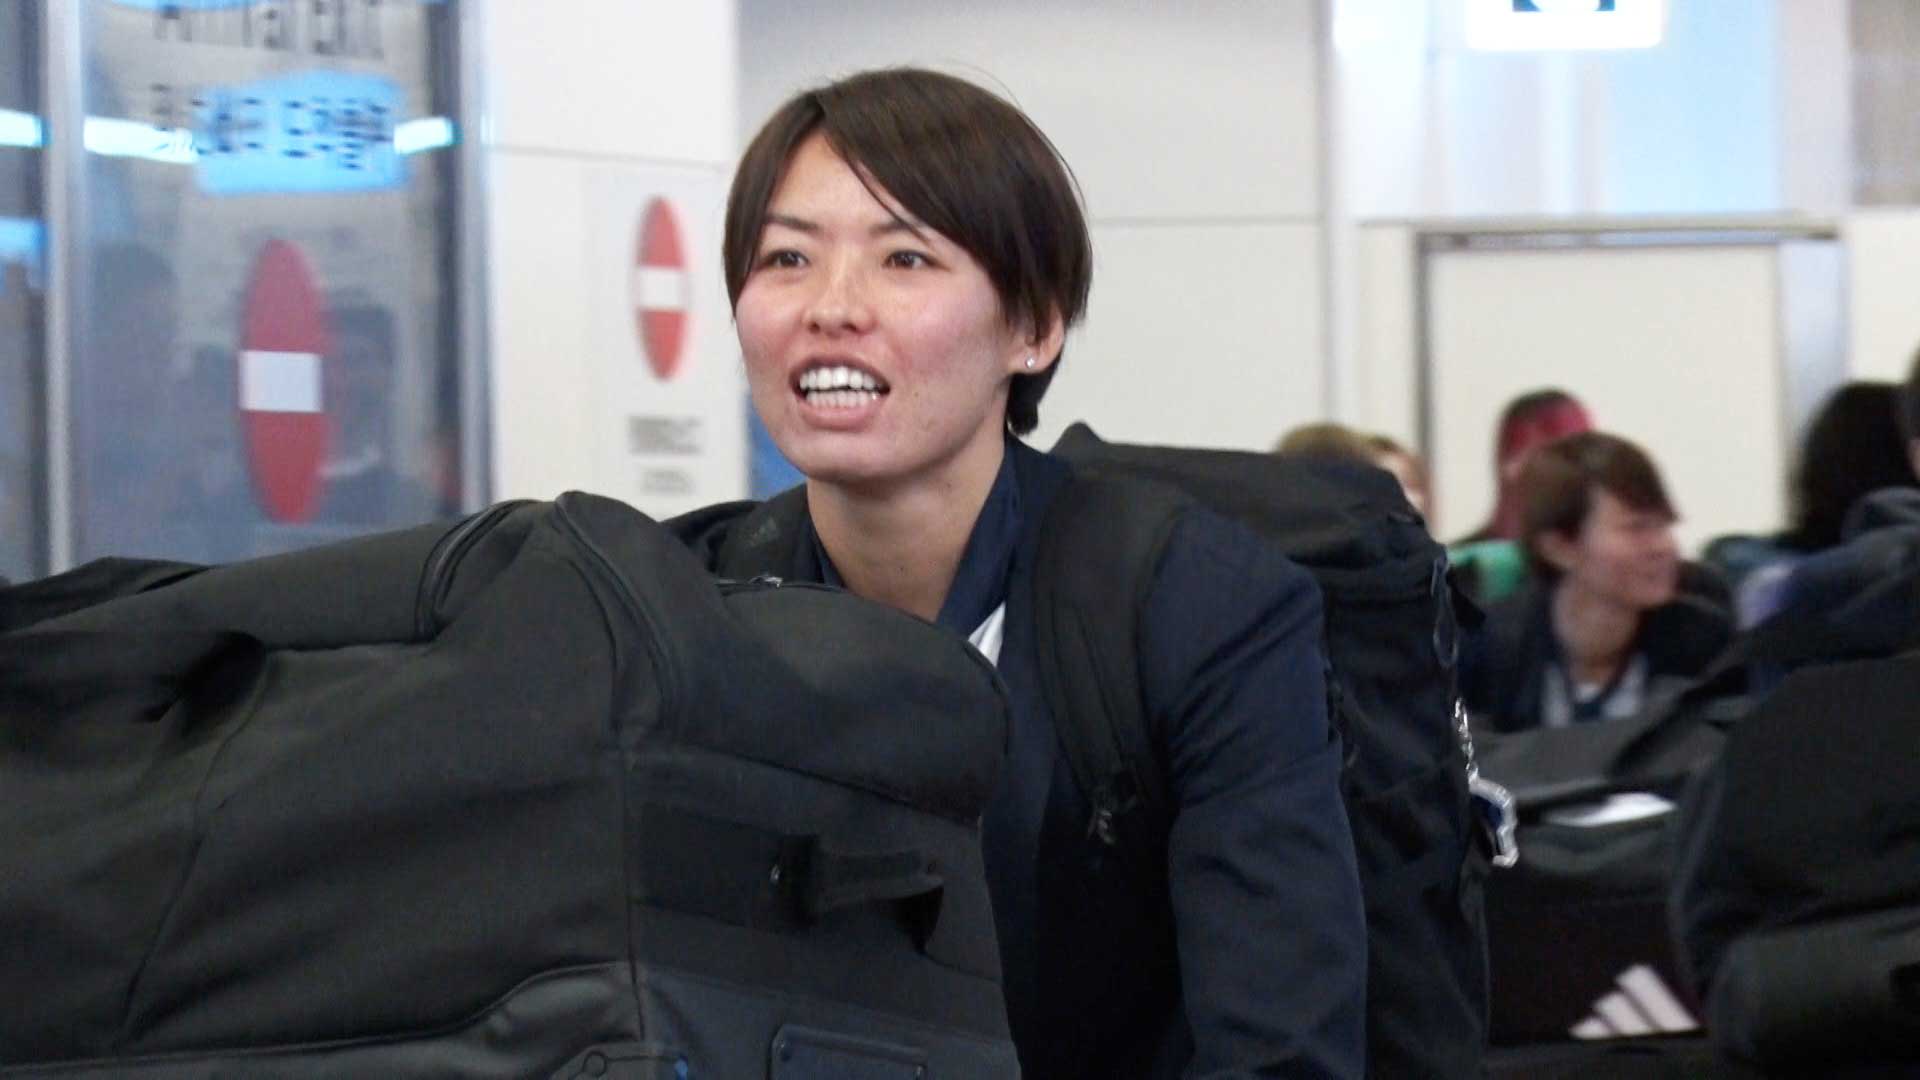 W杯ベスト8の“なでしこジャパン”が帰国 女子サッカーの盛り上がりへ 熊谷紗希キャプテン「ここからが大切になる」